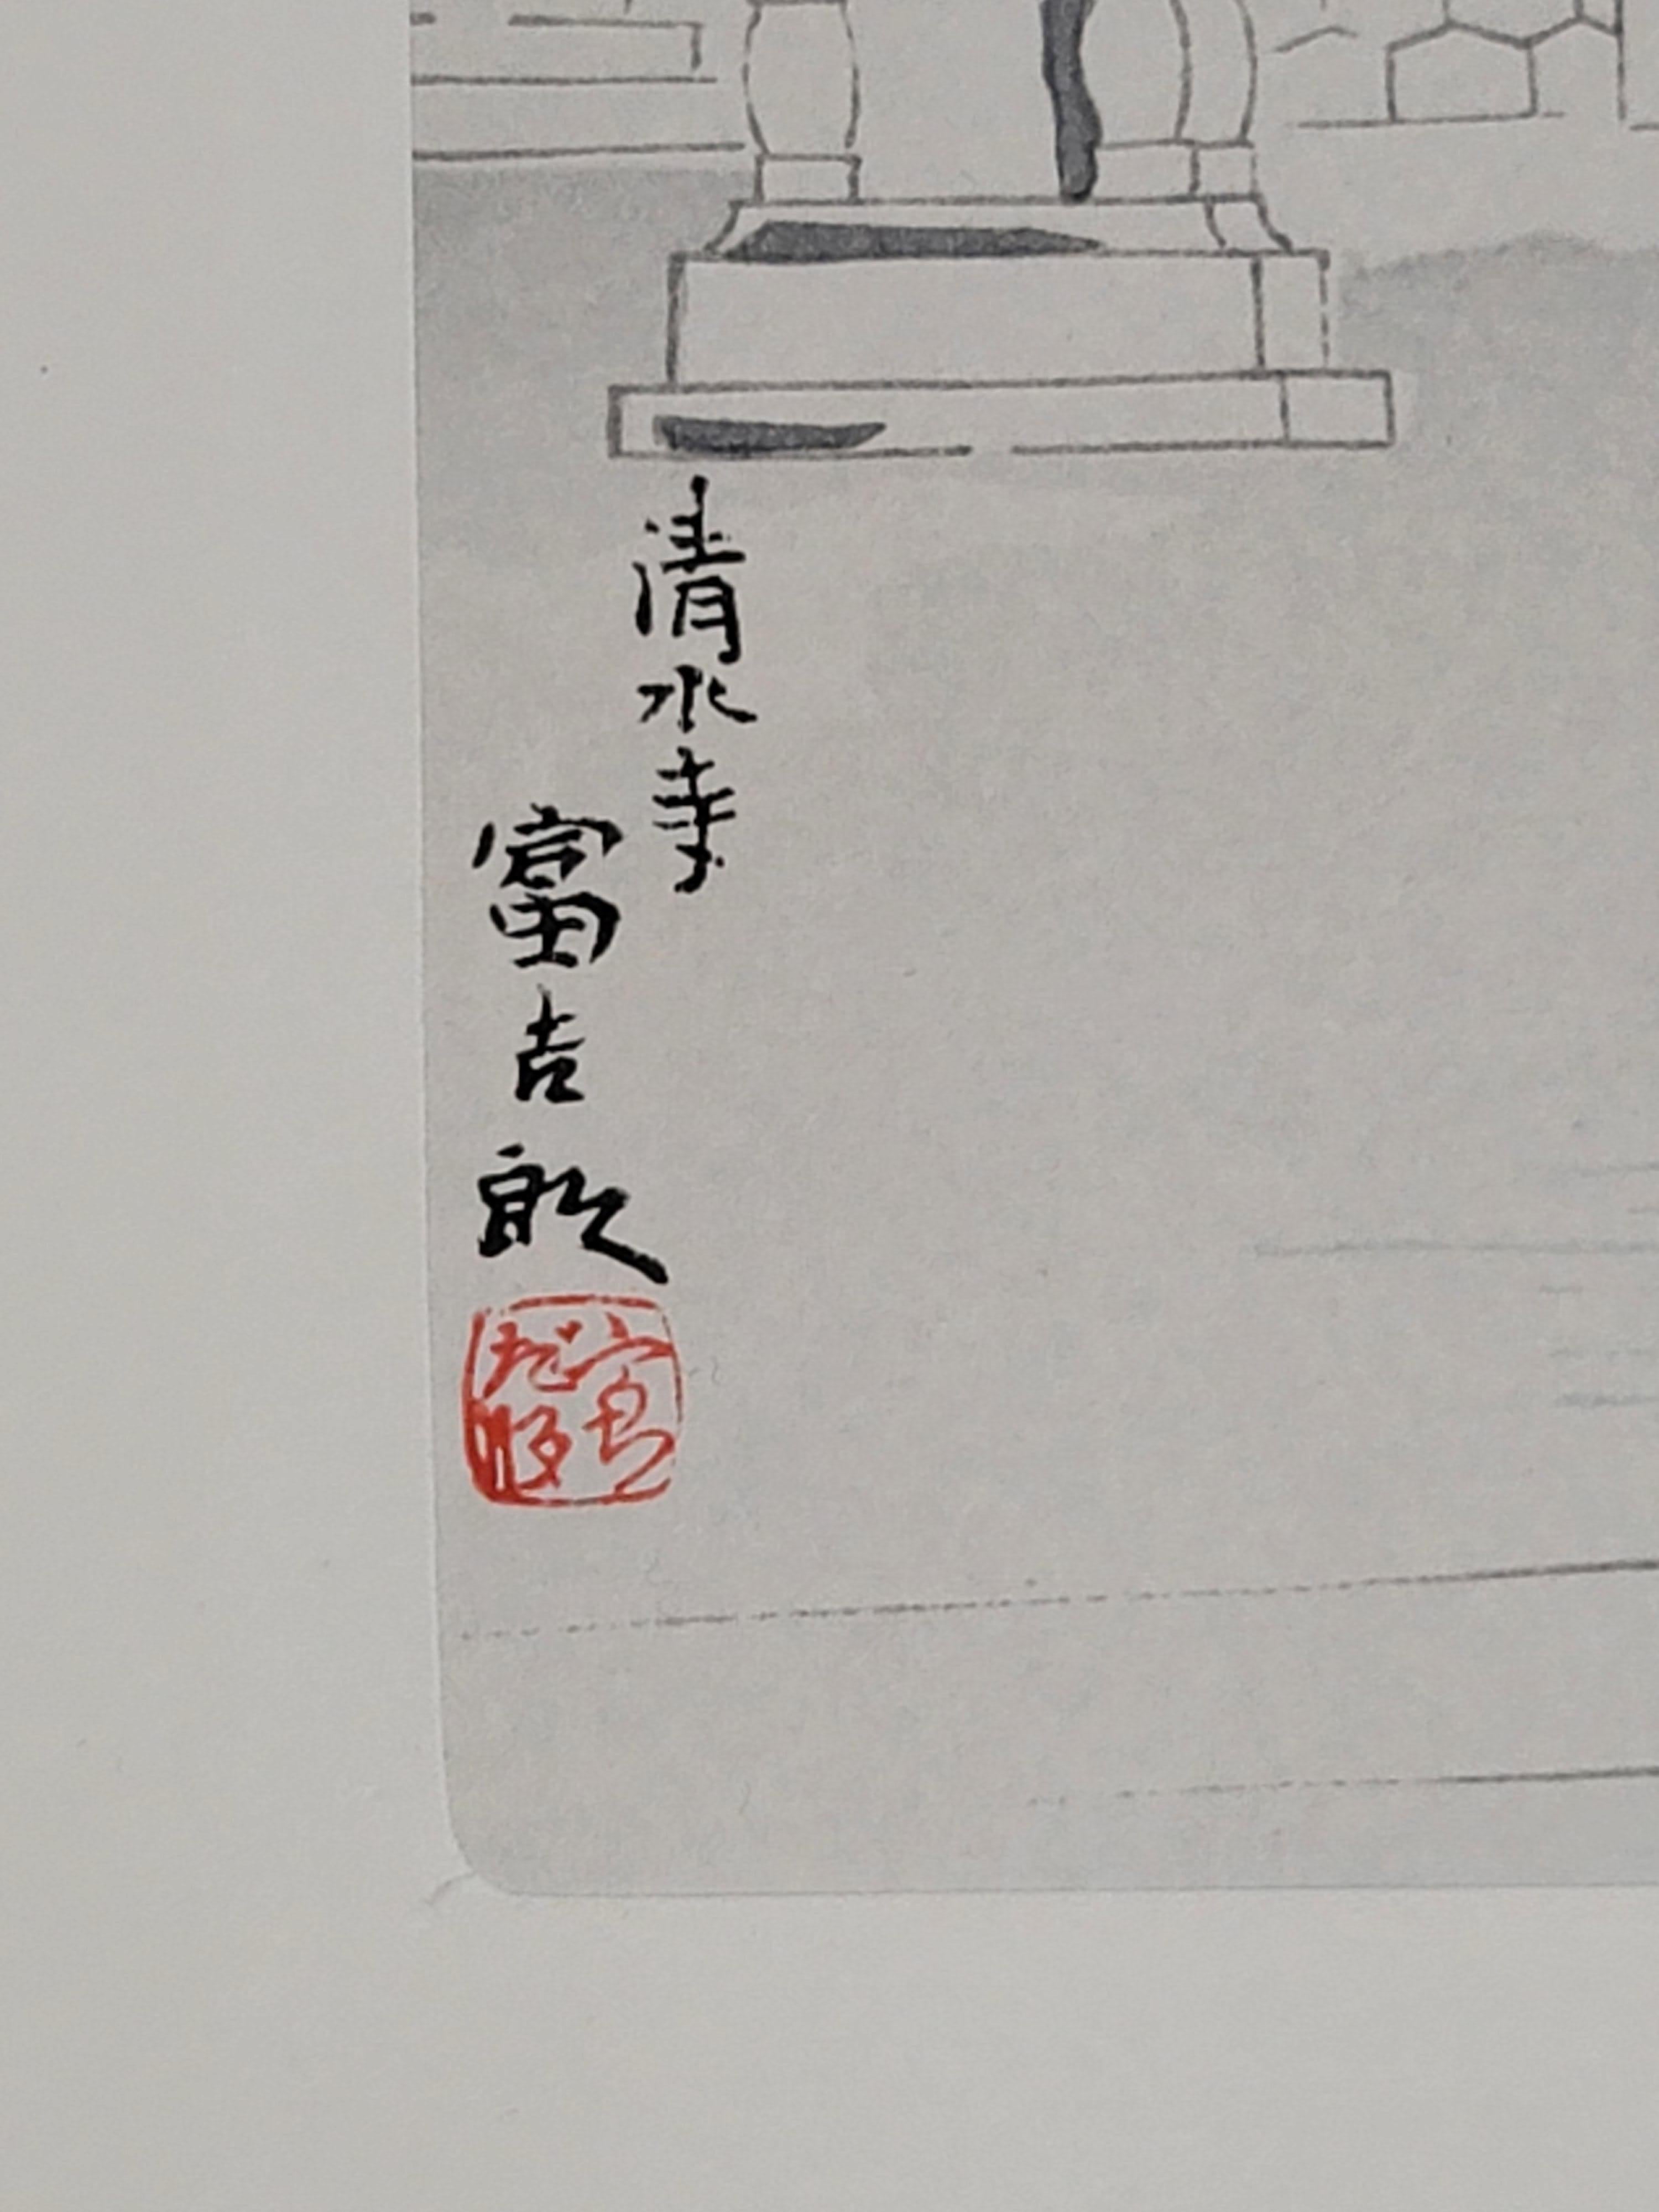 À propos de l'artiste :

L'art de Tomikichiro Tokuriki (1902-1999) constitue un pont important entre les deux grands mouvements de l'art japonais du début du XXe siècle, le shin hanga et le sosaku hanga. Comme les maîtres shin hanga classiques de